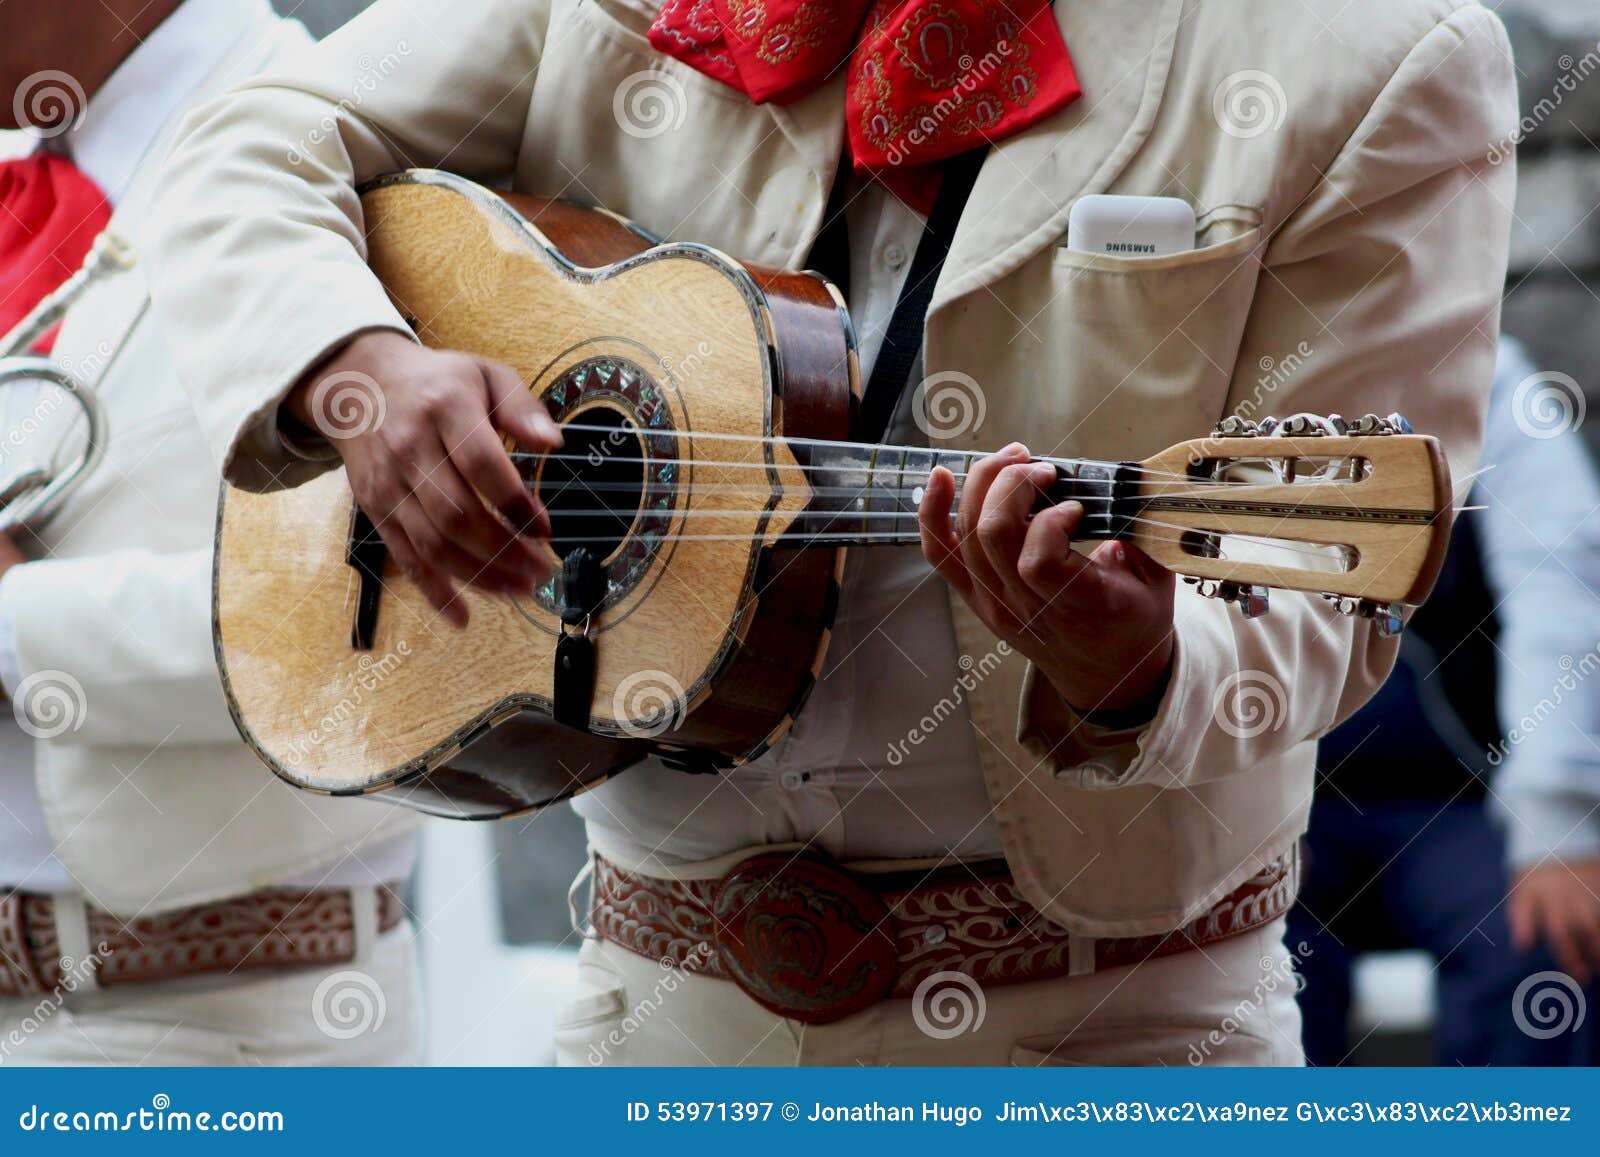 mariachi playing guitar